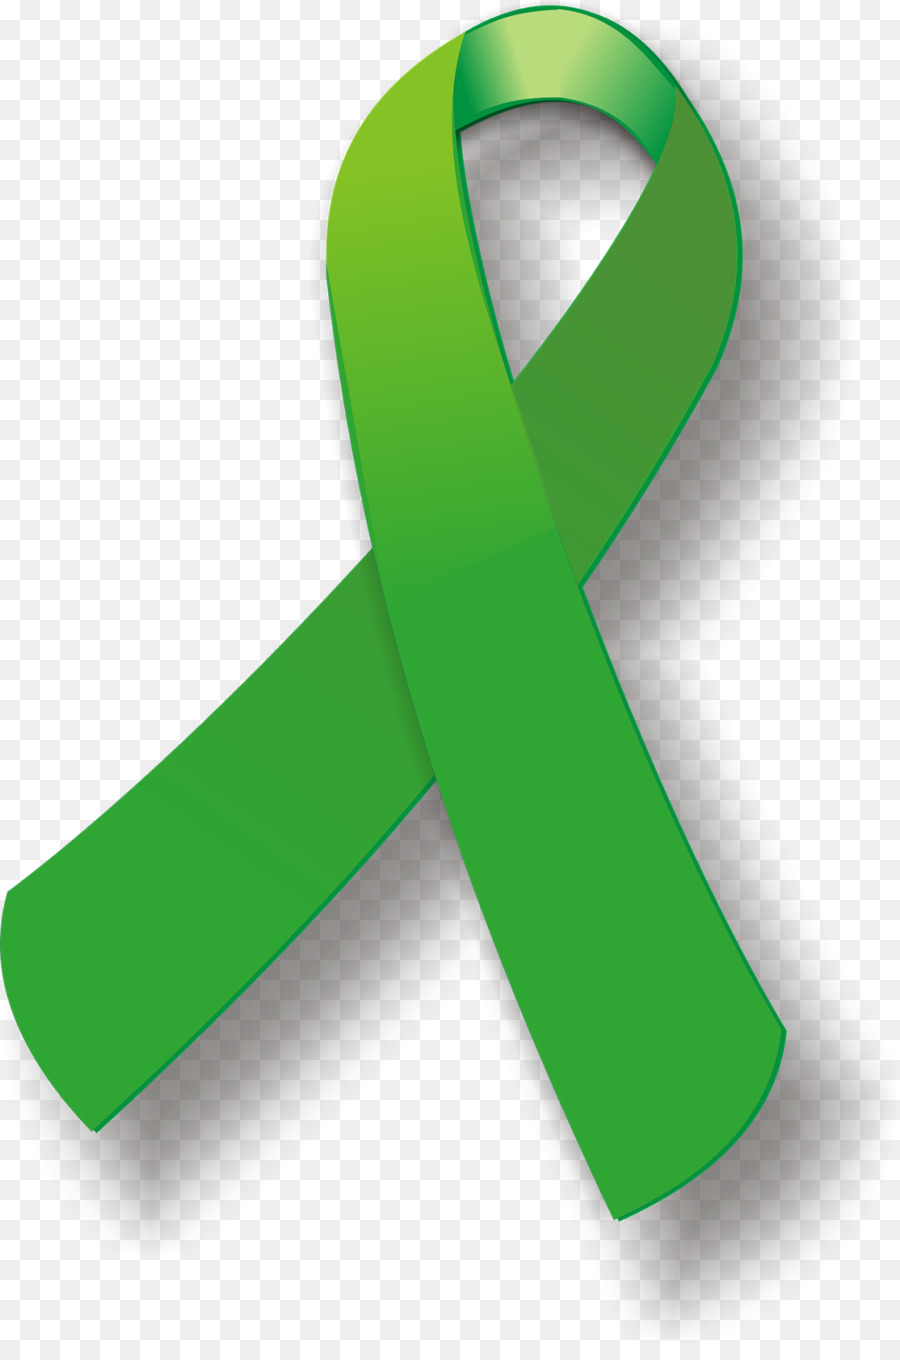 Green ribbon Awareness ribbon Cerebral palsy Pink ribbon - ribbon png download - 1070*1600 - Free Transparent Green Ribbon png Download.